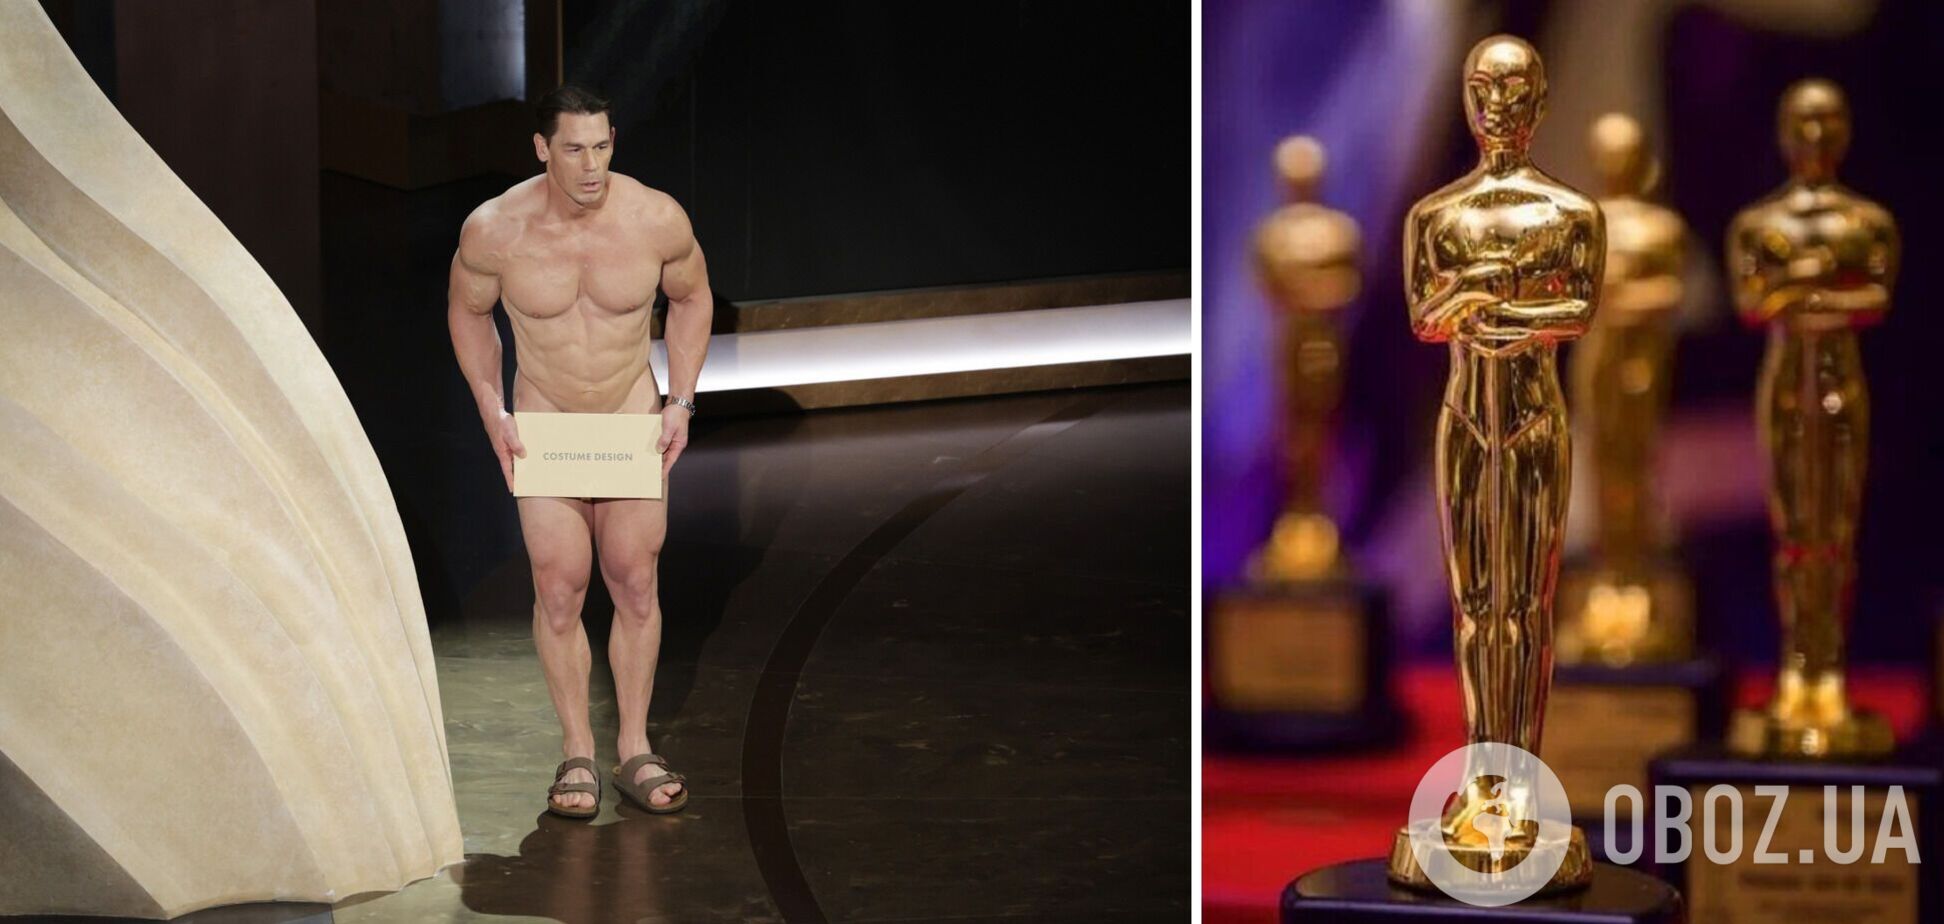 Голый Джон Сина помог установить рекорд на 'Оскаре': всплыли подробности пикантного номера с 'куклой Кена'